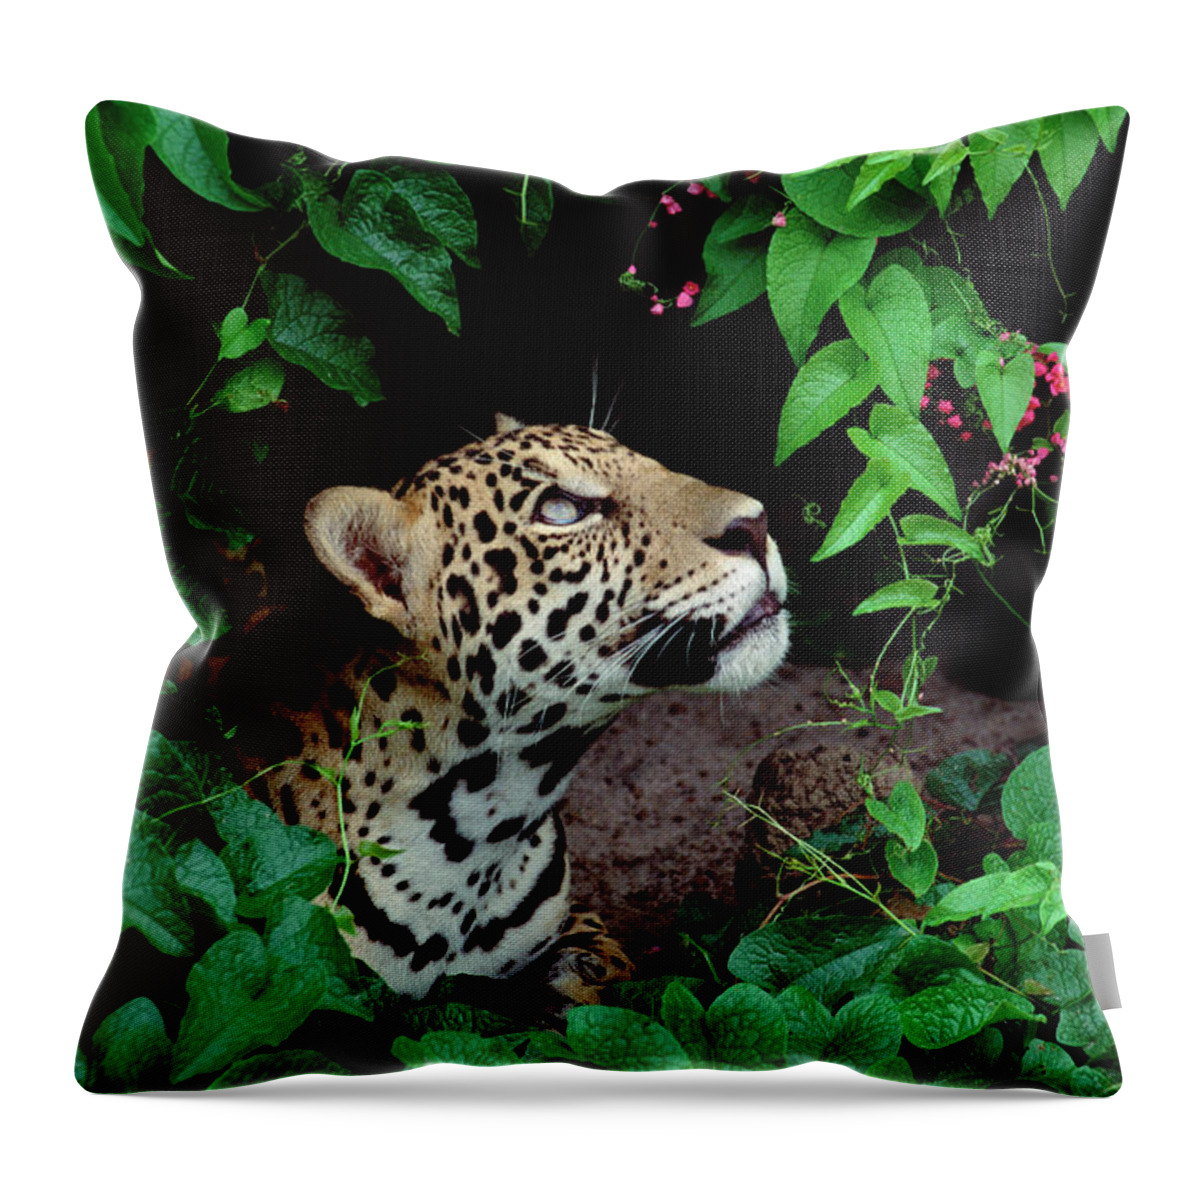 Mp Throw Pillow featuring the photograph Jaguar Panthera Onca Peeking by Claus Meyer